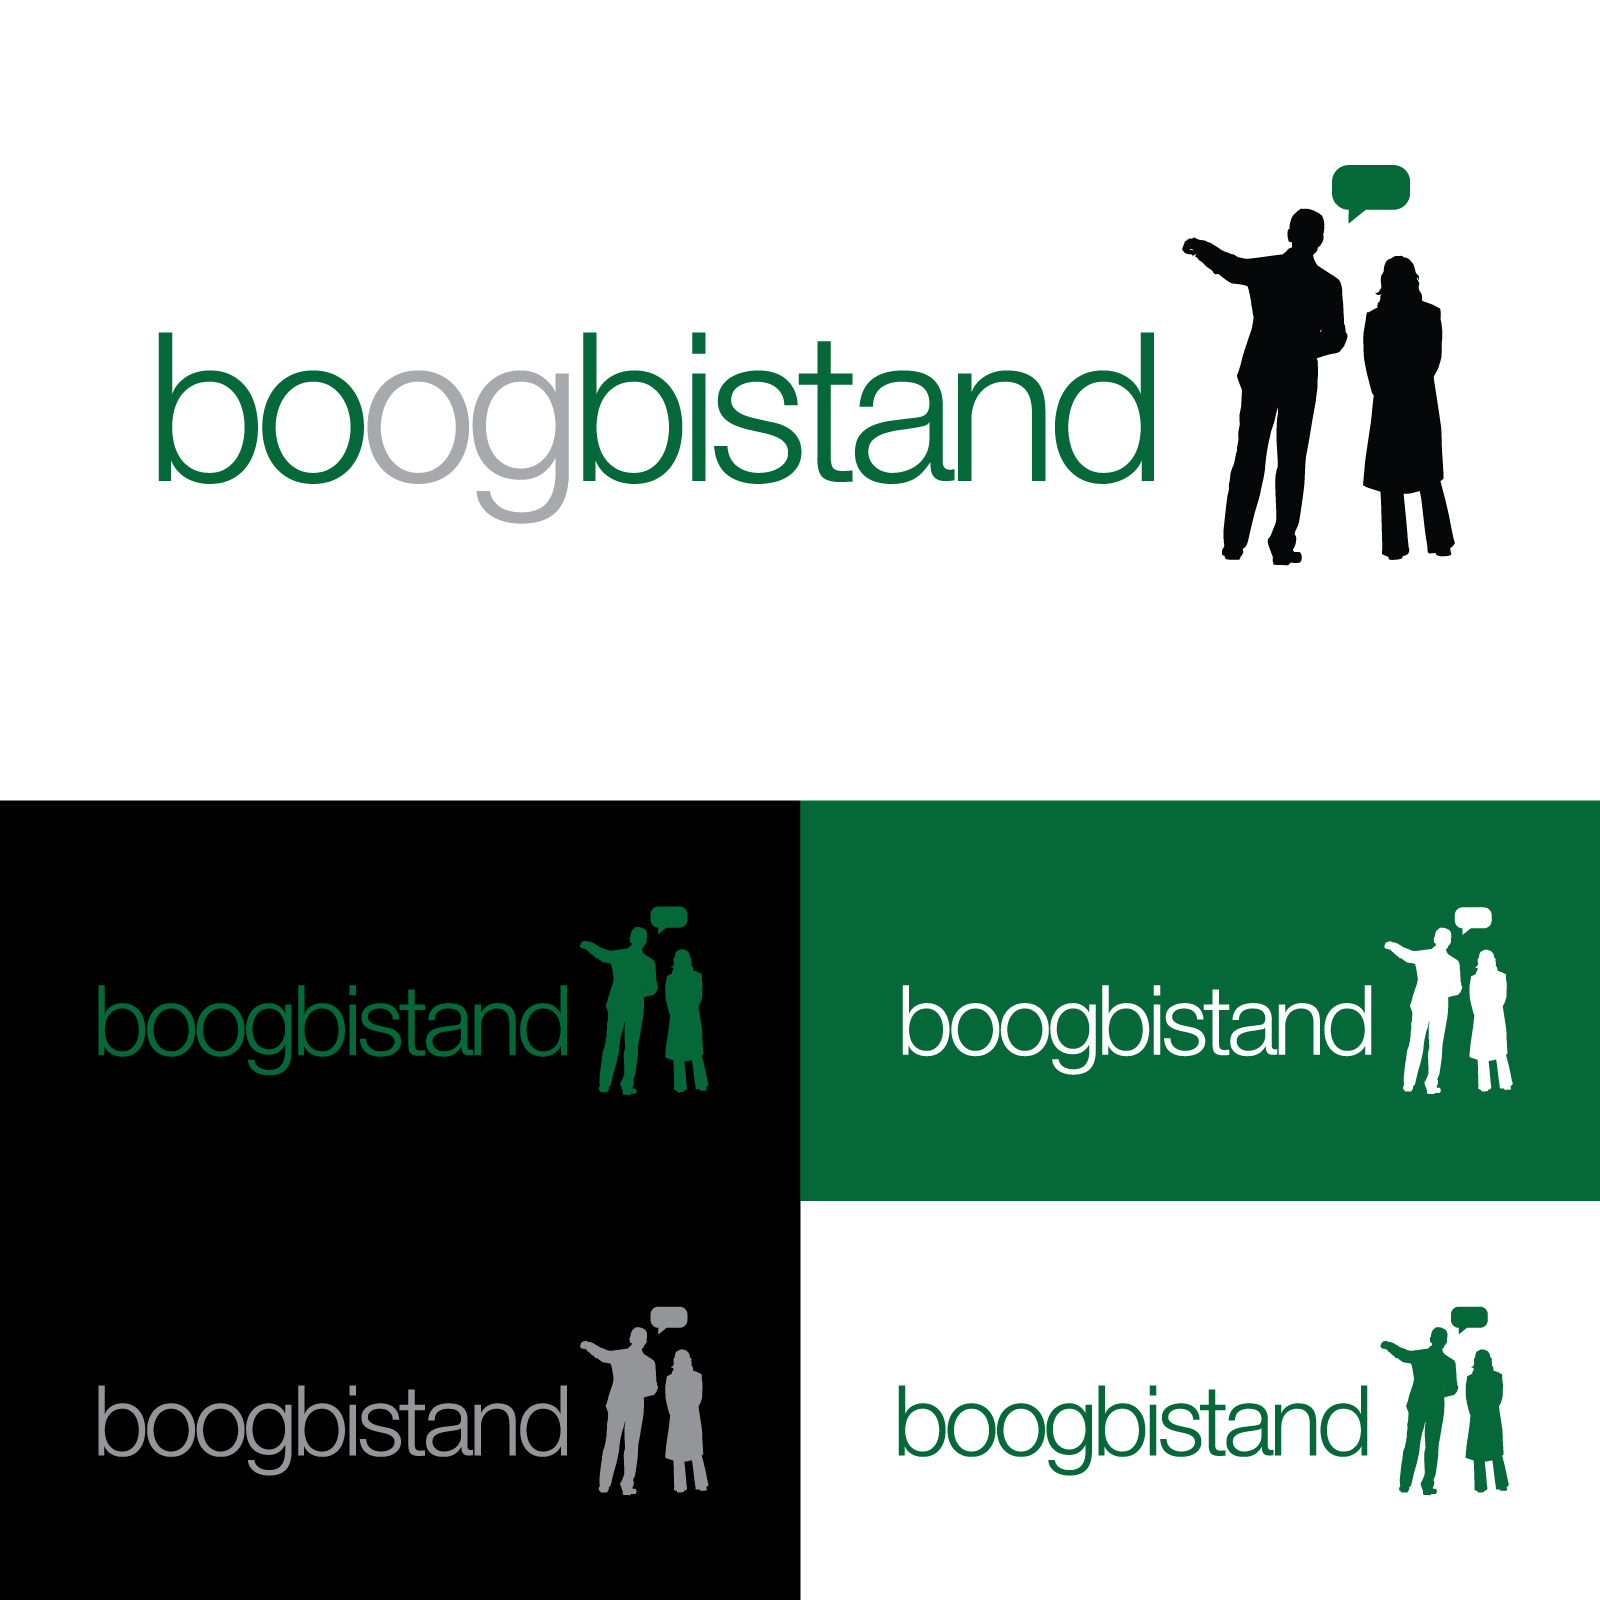 Bo og Bistand logos